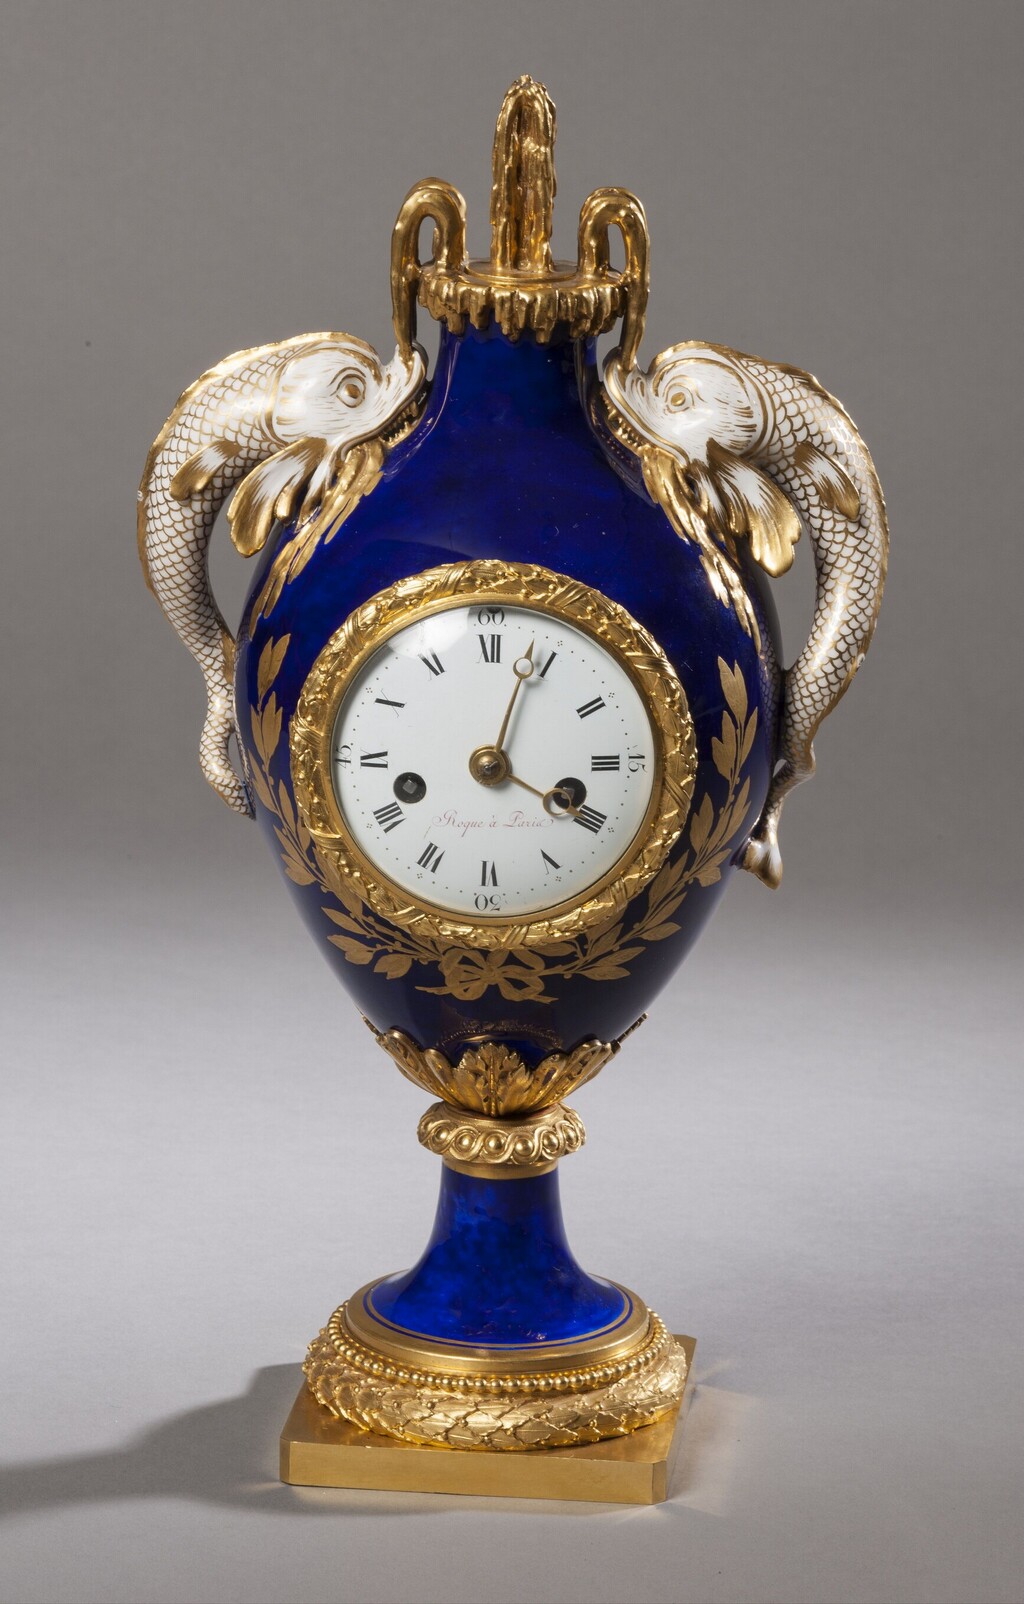 Horloges et pendules du XVIIIe siècle - Page 2 Image173